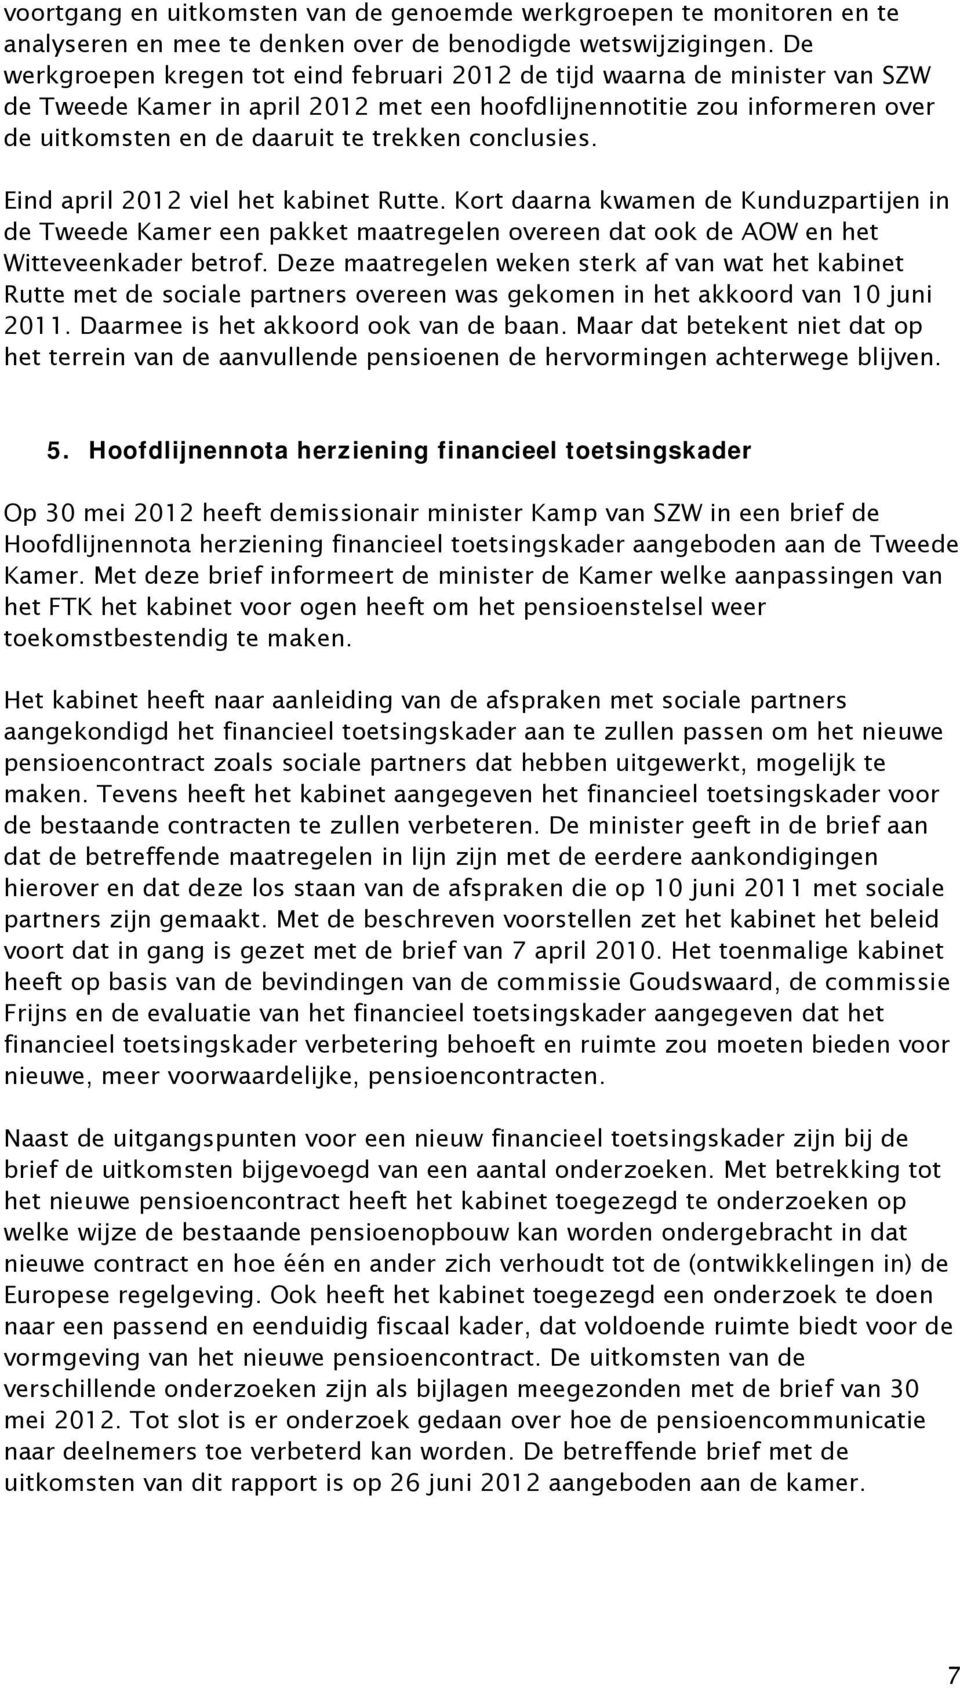 conclusies. Eind april 2012 viel het kabinet Rutte. Kort daarna kwamen de Kunduzpartijen in de Tweede Kamer een pakket maatregelen overeen dat ook de AOW en het Witteveenkader betrof.